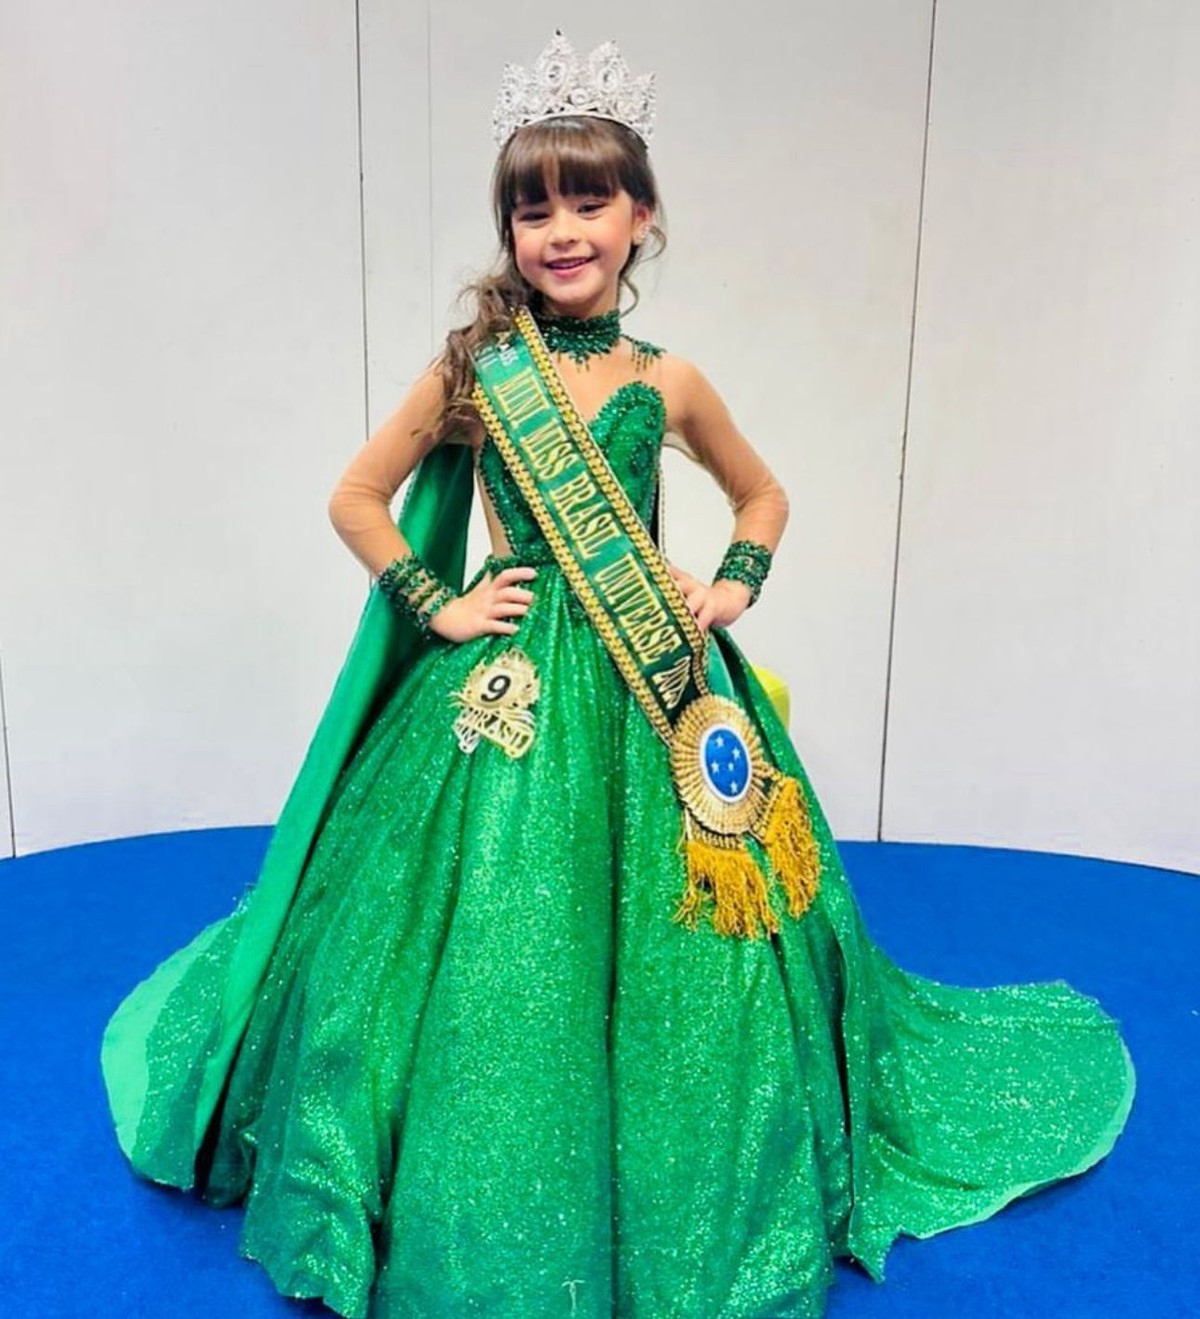 Imperatrizense De 11 Anos Vai Jogar Pela Seleção Brasileira Na